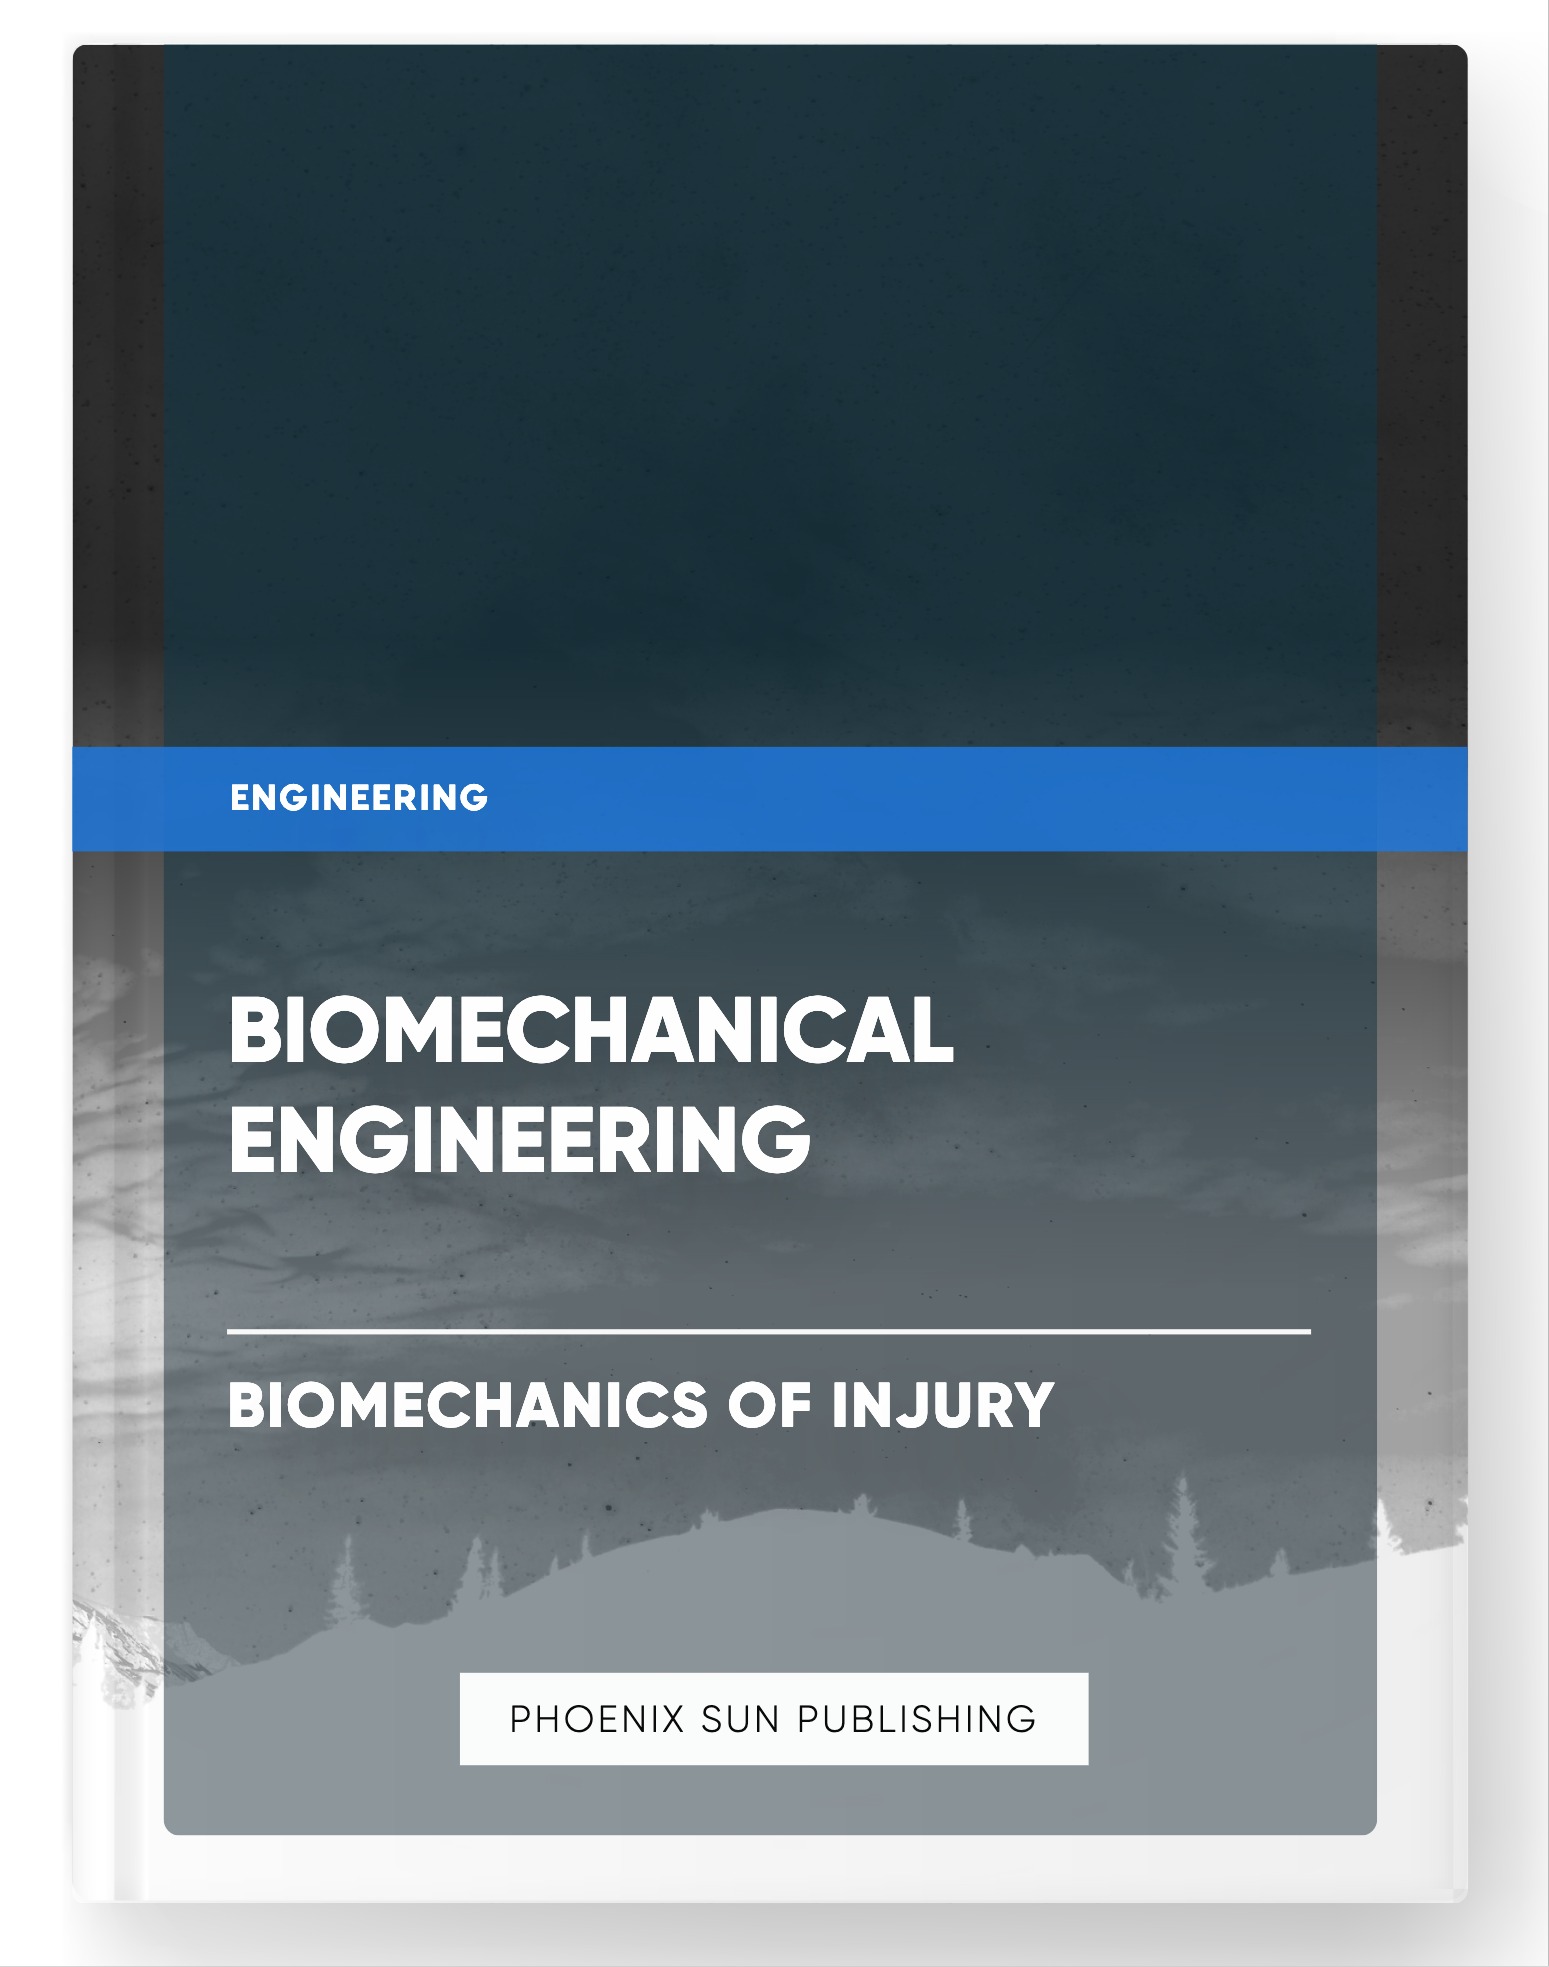 Biomechanical Engineering – Biomechanics of Injury